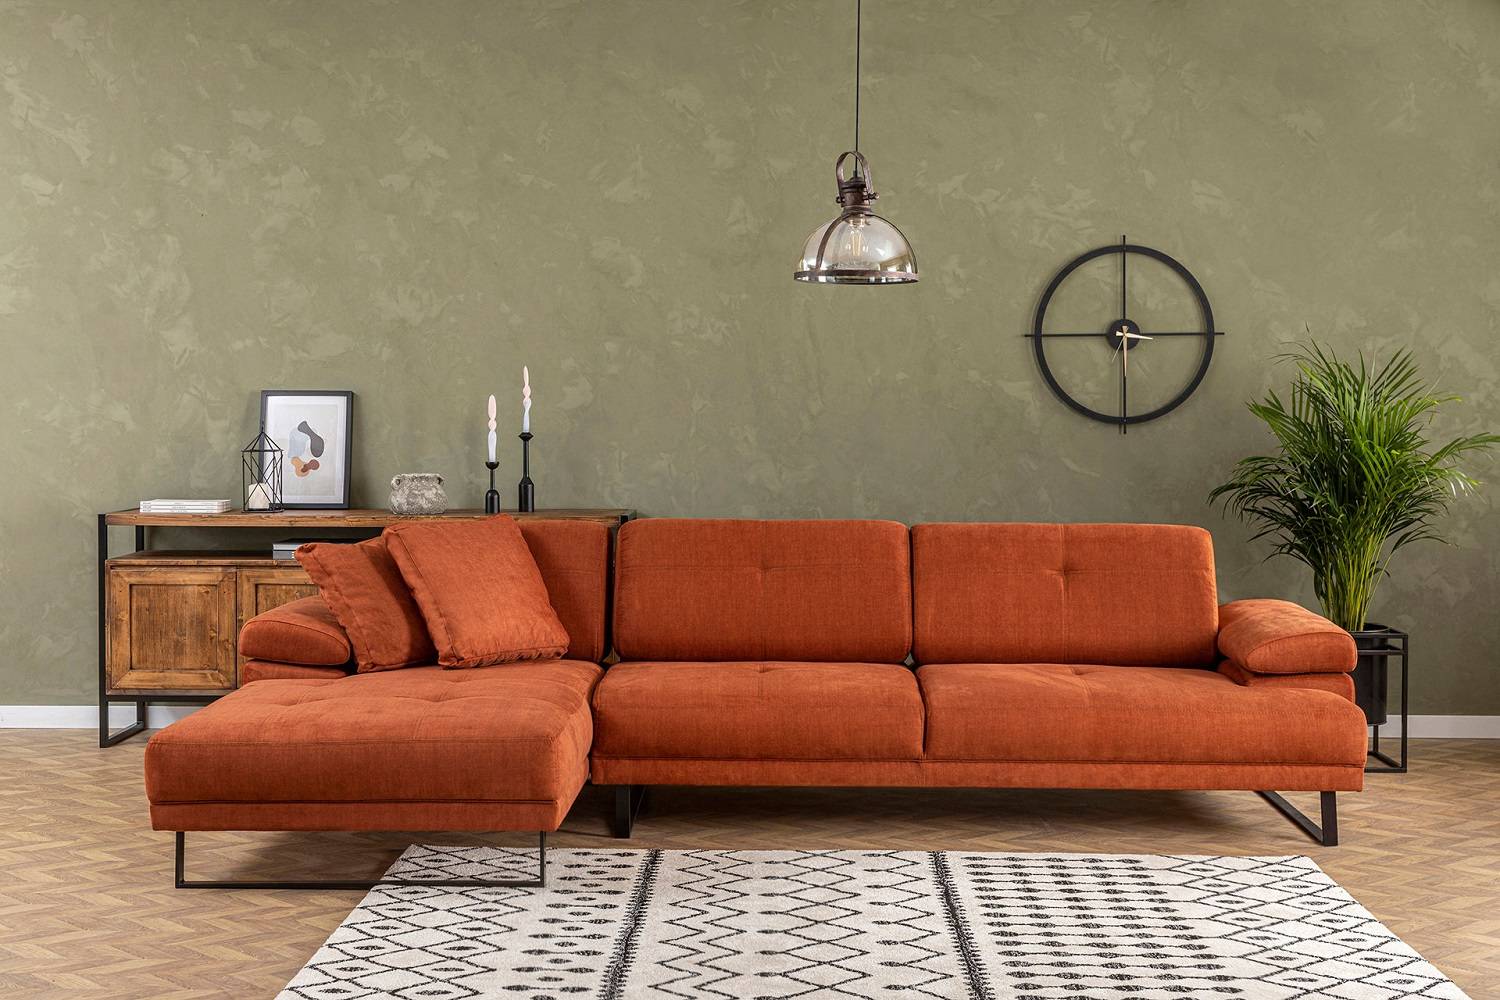 Sofahouse Designová rohová sedačka Vatusia 274 cm oranžová - levá